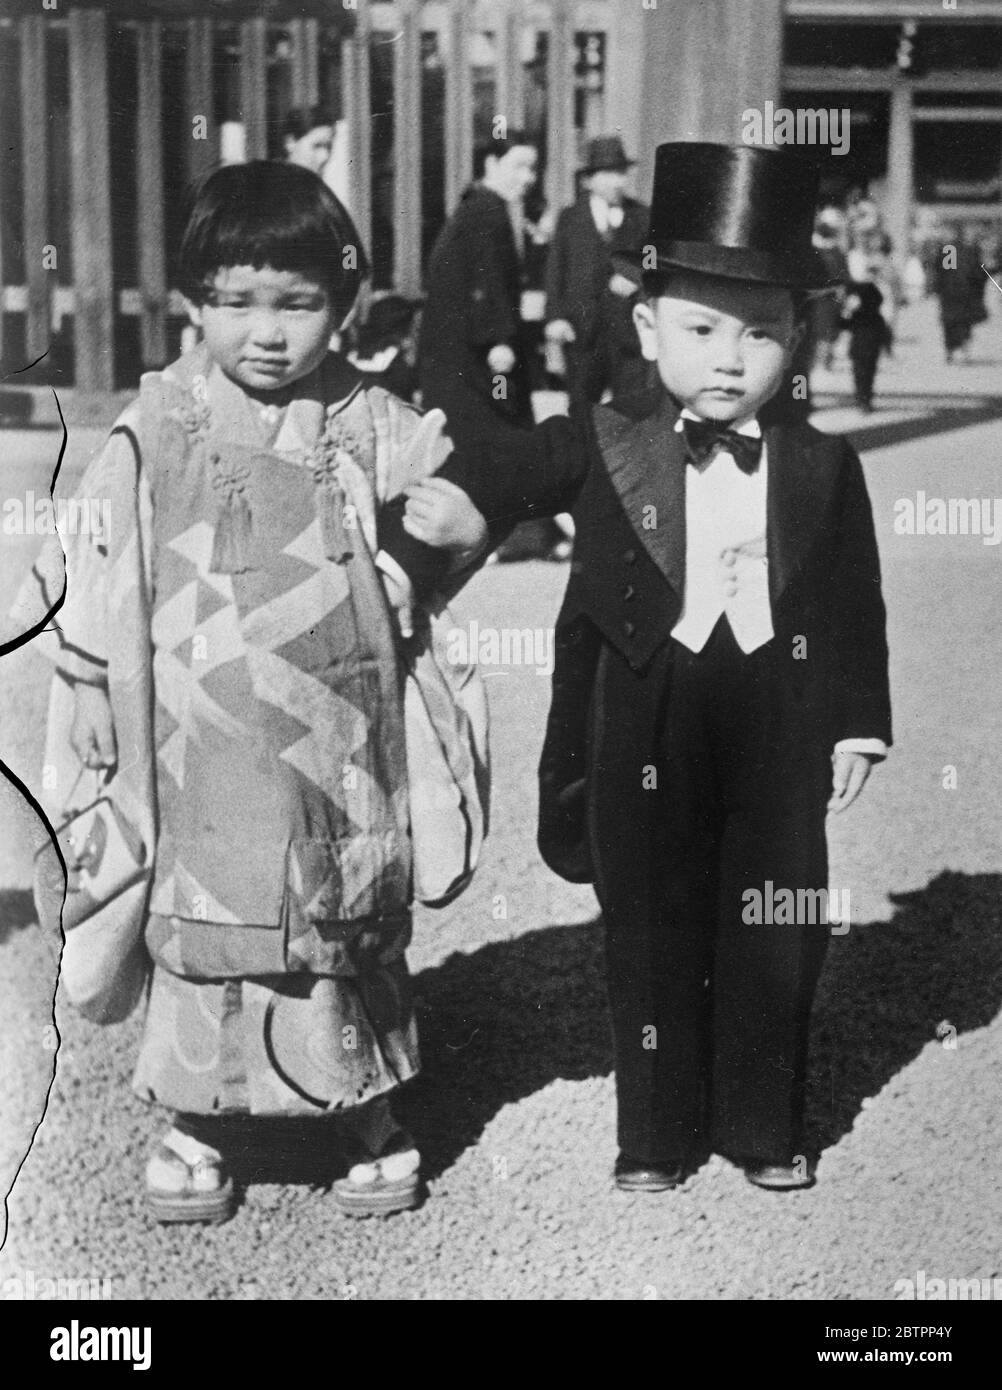 Er hält an seinen Geschichten fest!. In Japan ist es Brauch, dass Kinder im Alter von drei, fünf und sieben Jahren in bester Kleidung zum Schutzheiligtum gebracht werden, um für eine glückliche Zukunft zu beten. Seit Ausbruch der Feindseligkeiten in China, 80% der Jungen in Militär- oder Marinehandkleidung gekleidet. Foto zeigt, ein kleiner Bürger von Tokio, der anscheinend keine militärischen Ambitionen hat, trägt seinen Hut und Schwanz, als er seine "Dame" zum Schrein führt. 28. Januar 1938 Stockfoto